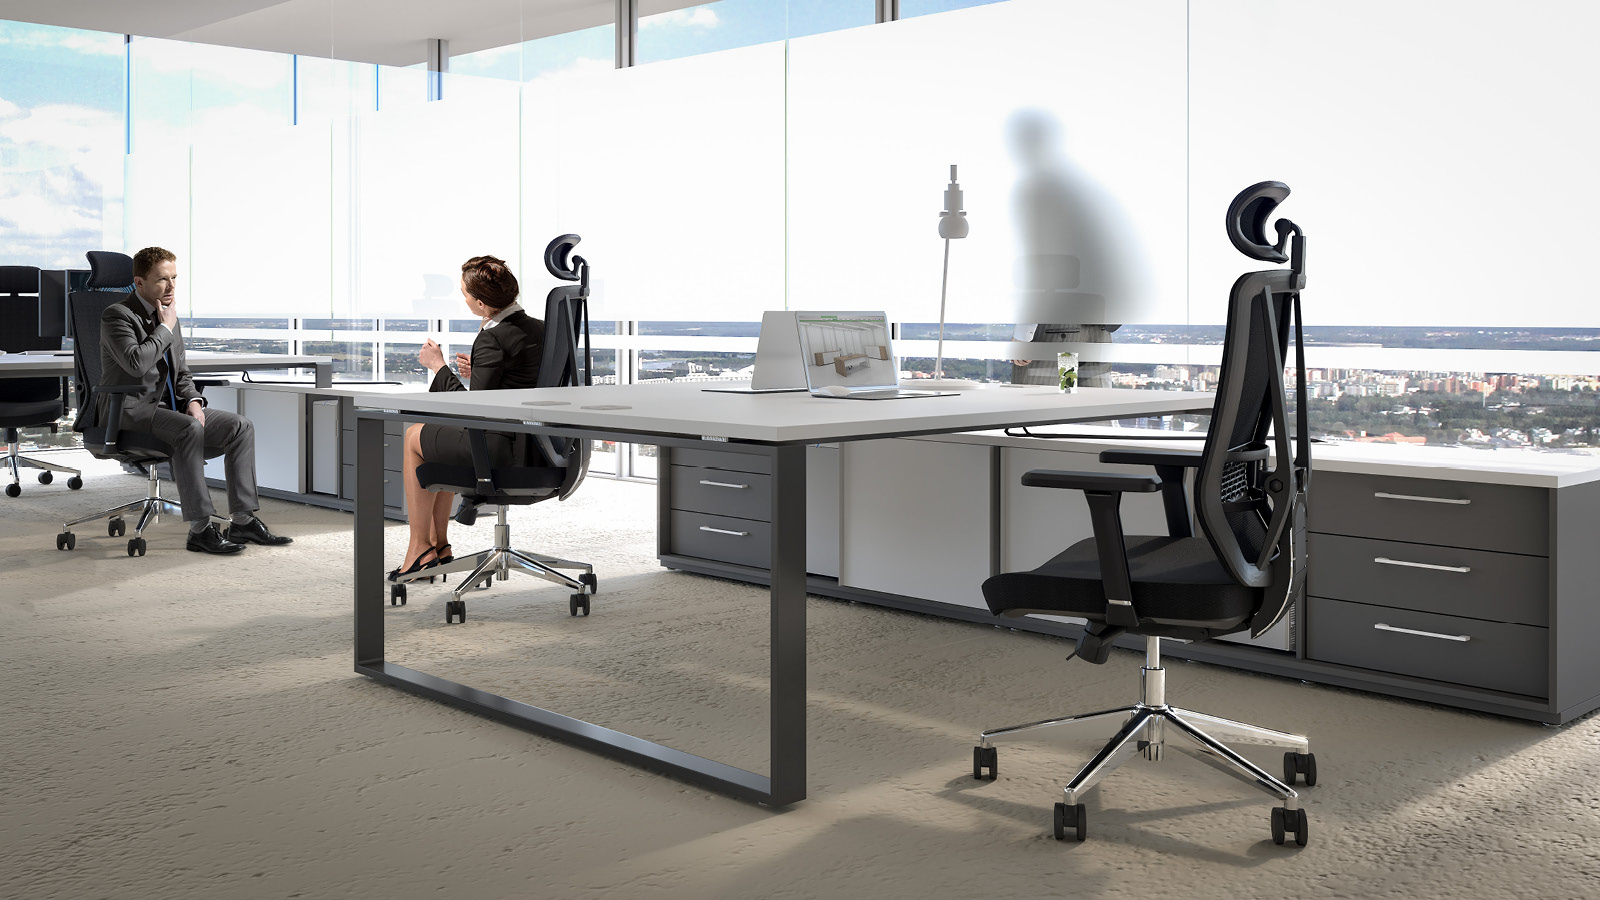 Rozmowa w przestrzeni biurowej - kobieta z mężczyzną siedzą na czarnych krzesłach obrotowych, w otoczeniu stanowisk pracy.